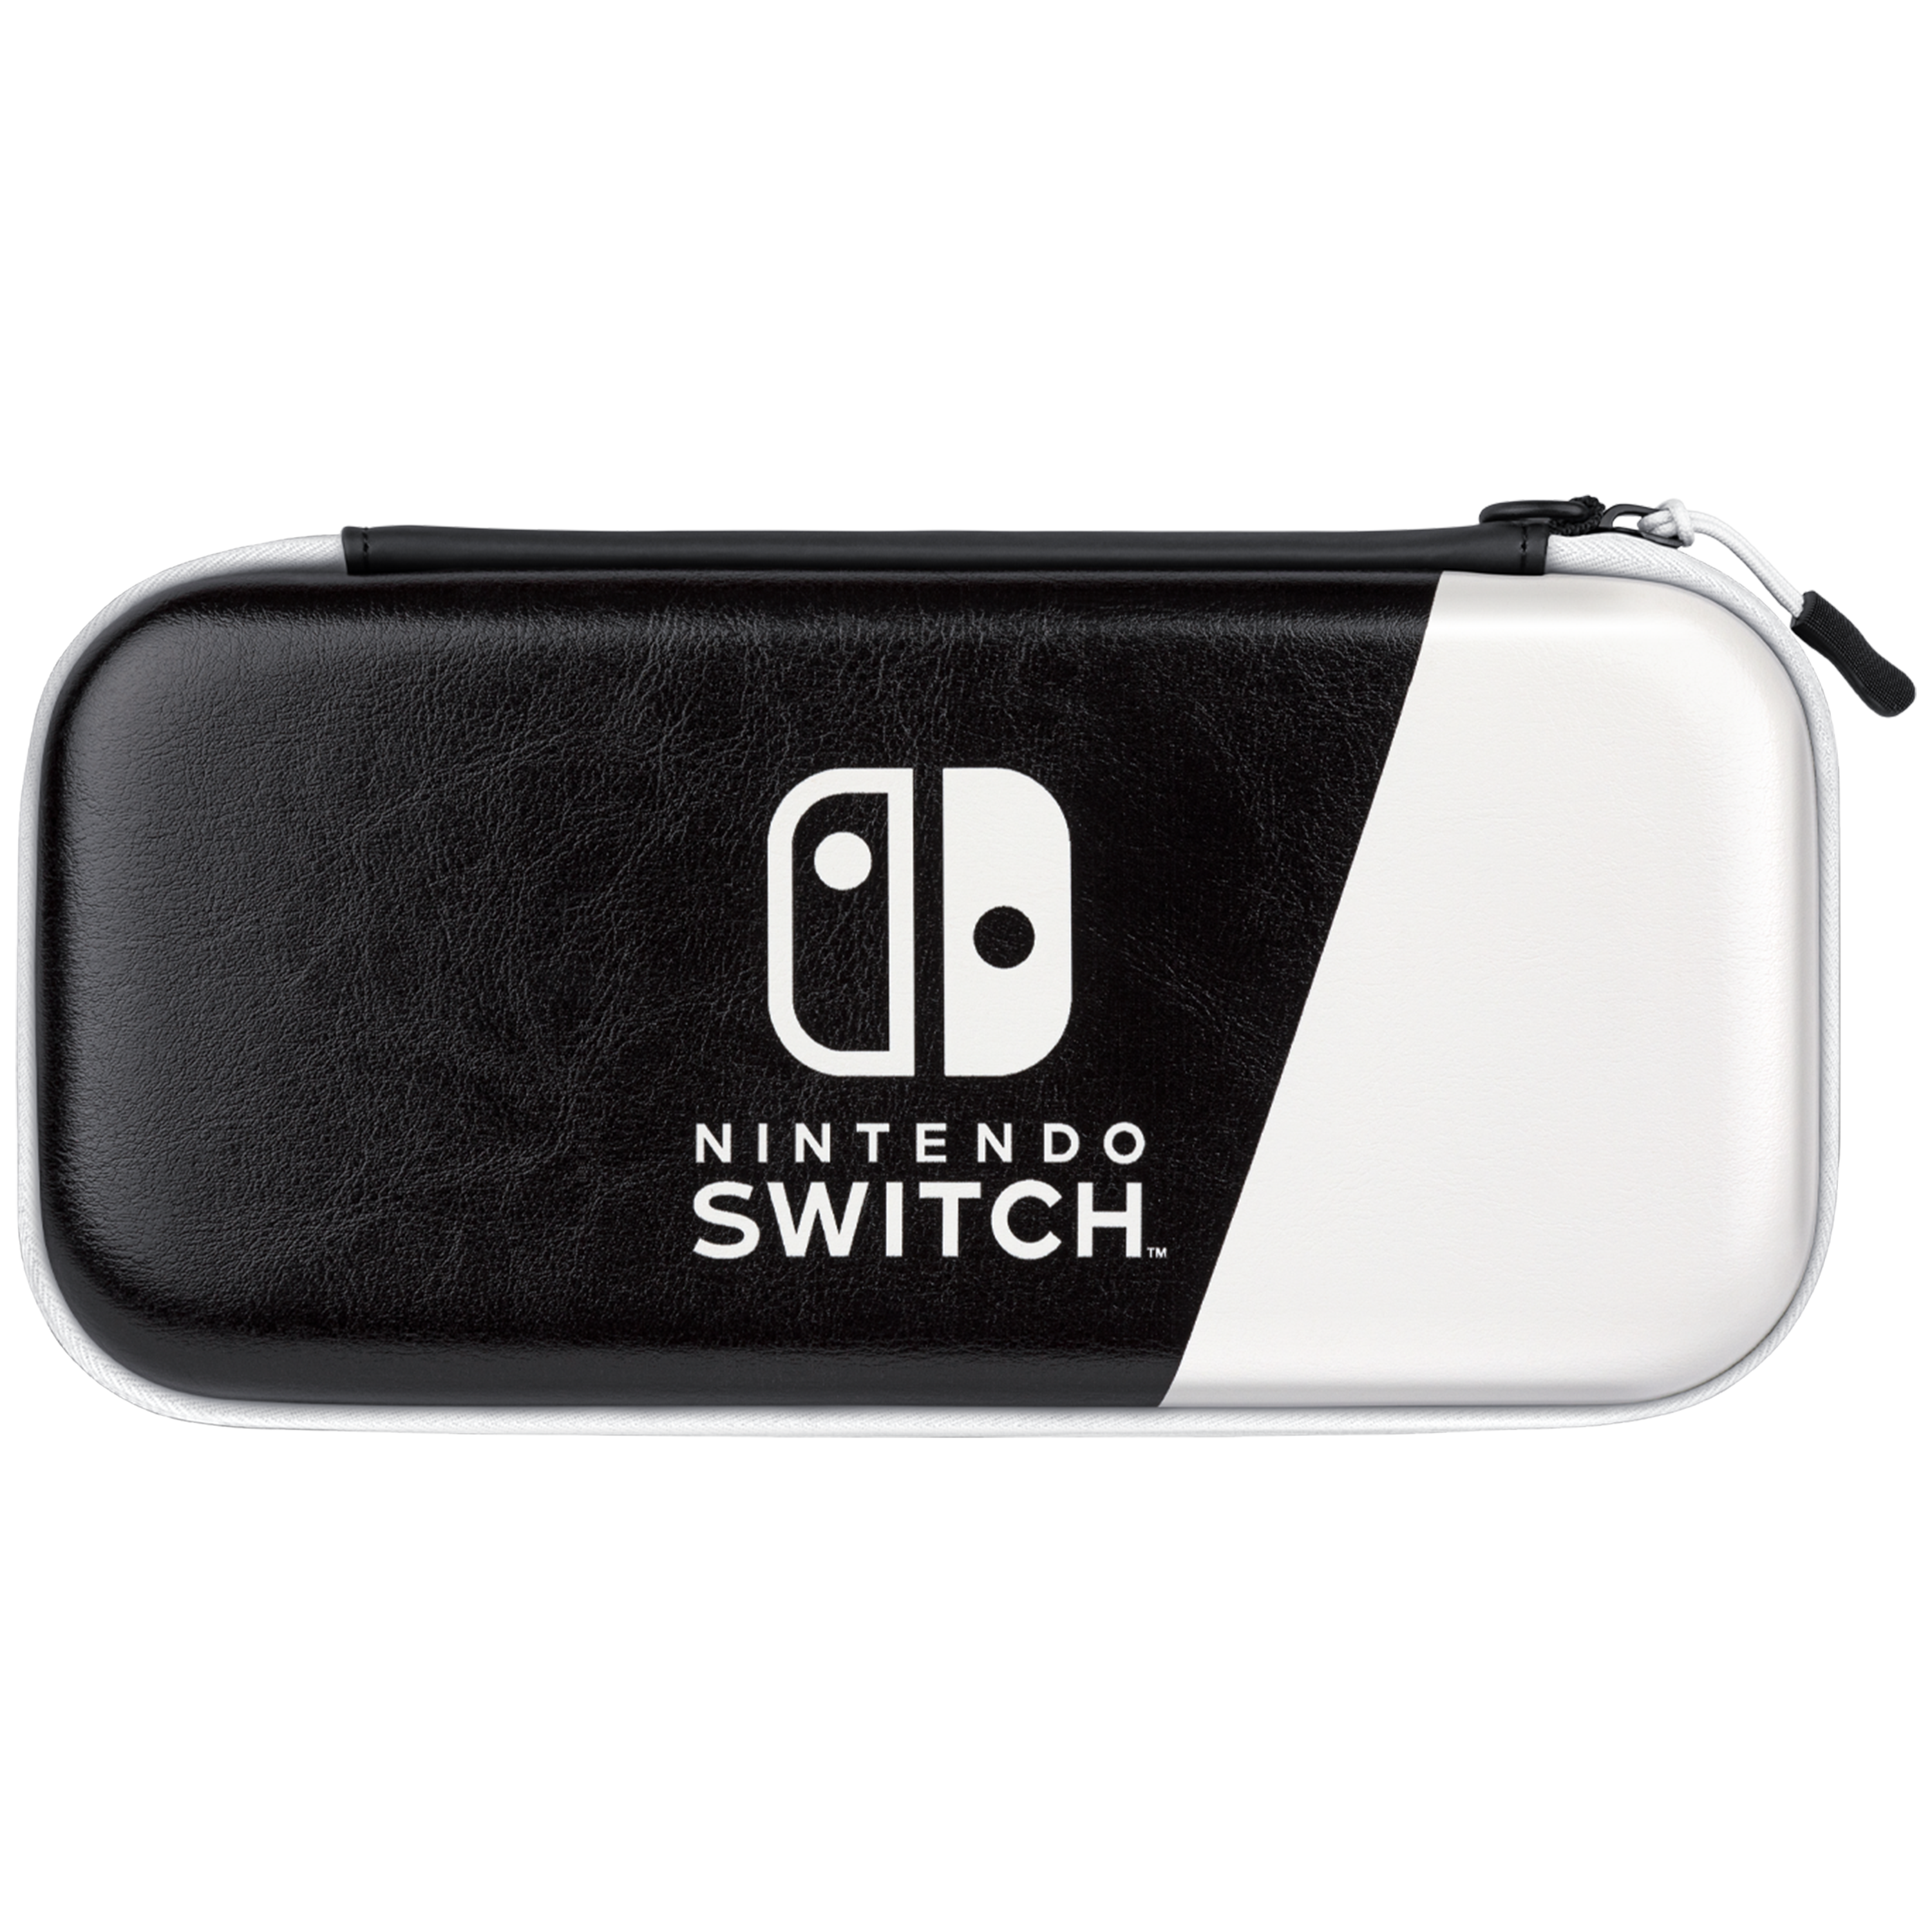 Nintendo Switch case - OLED Model